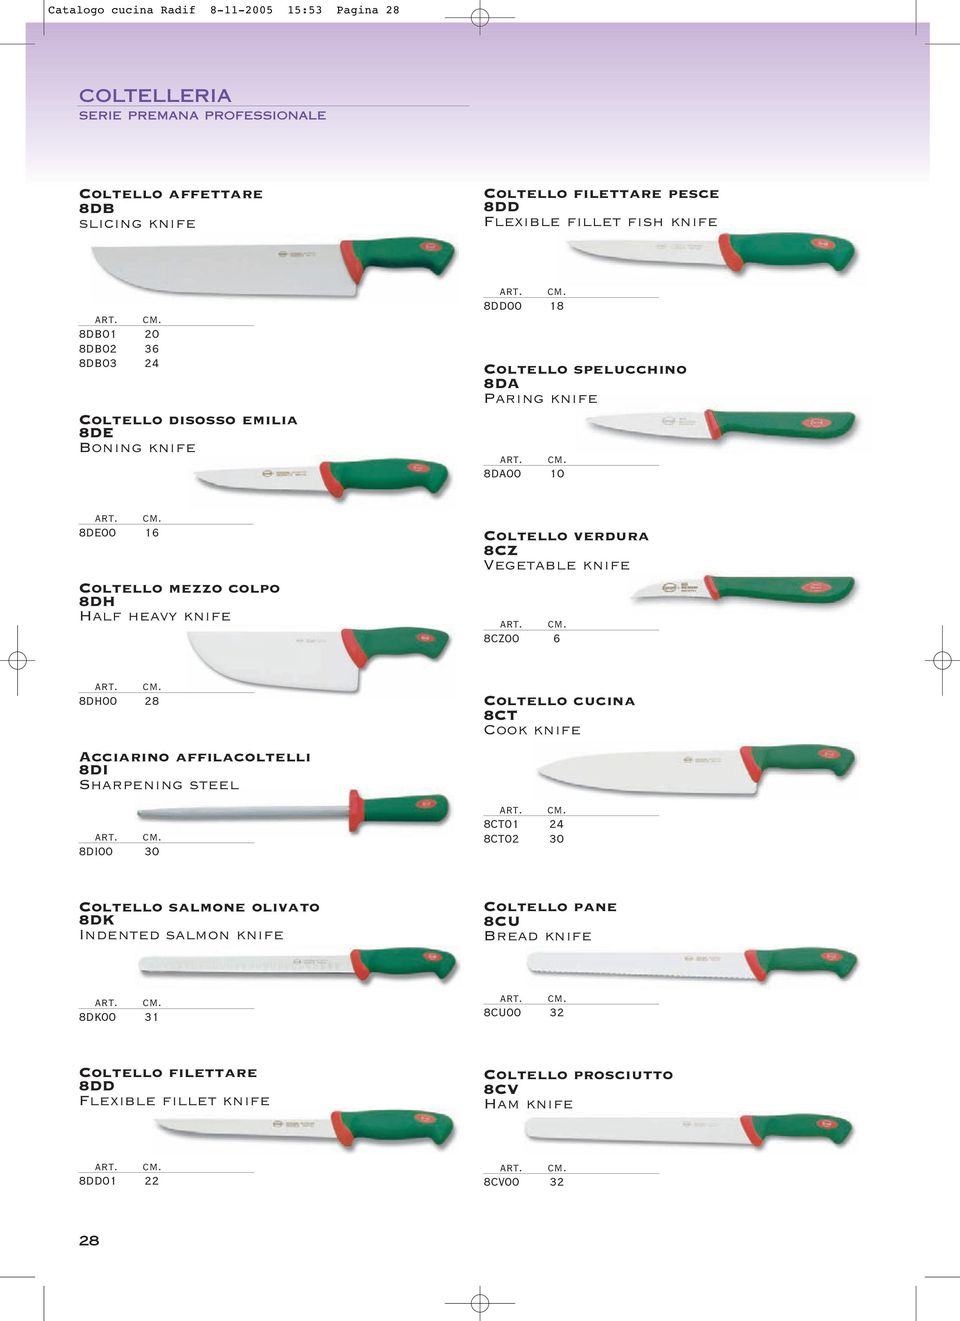 Coltello verdura 8CZ Vegetable knife 8CZ00 6 8DH00 28 Acciarino affilacoltelli 8DI Sharpening steel 8DI00 30 Coltello cucina 8CT Cook knife 8CT01 24 8CT02 30 Coltello salmone